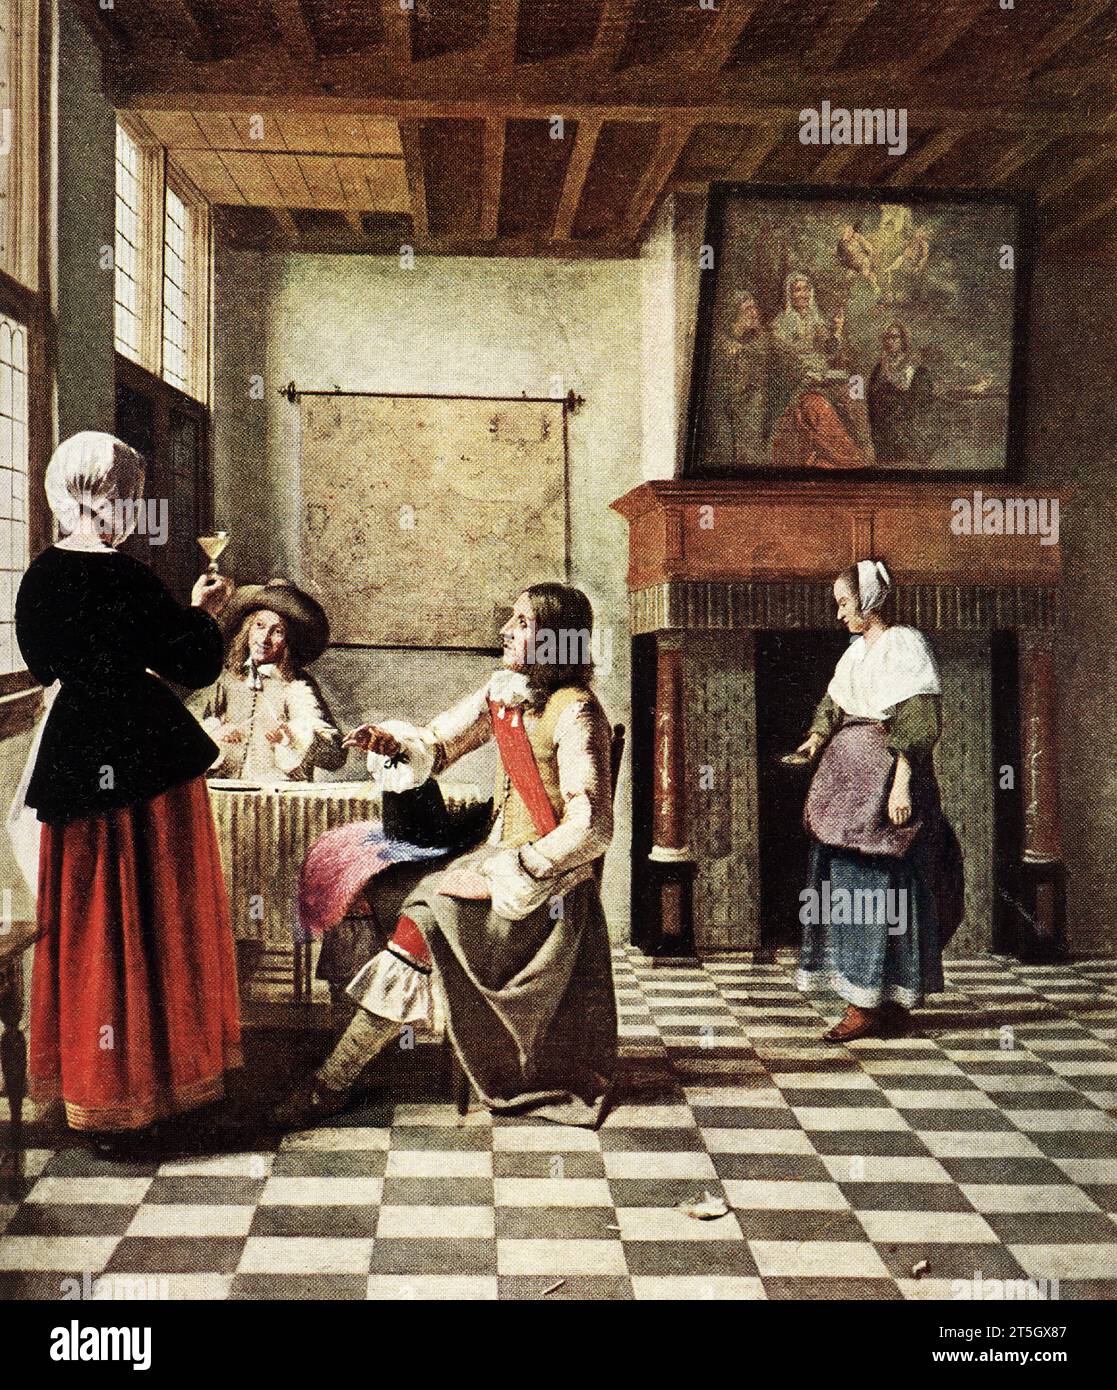 Die Bildunterschrift von 1916 lautet: „Pieter de Hooch 1629-1677 Dutch School 'Dutch Interior—with two Cavaliers and the Girl in the Red Rock'. In der National Gallery. Signiert P. D. H. auf dem Tisch links vorne am Fenster. In Öl auf Leinwand gemalt. Pieter de Hooch war ein niederländischer Maler aus dem Goldenen Zeitalter, der für seine Genrewerke ruhiger Hausszenen mit offener Tür berühmt war. Er war Zeitgenossen in der Delfter Gilde von St. Luke, von Jan Vermeer, mit dem sein Werk Themen und Stil teilt. Stockfoto